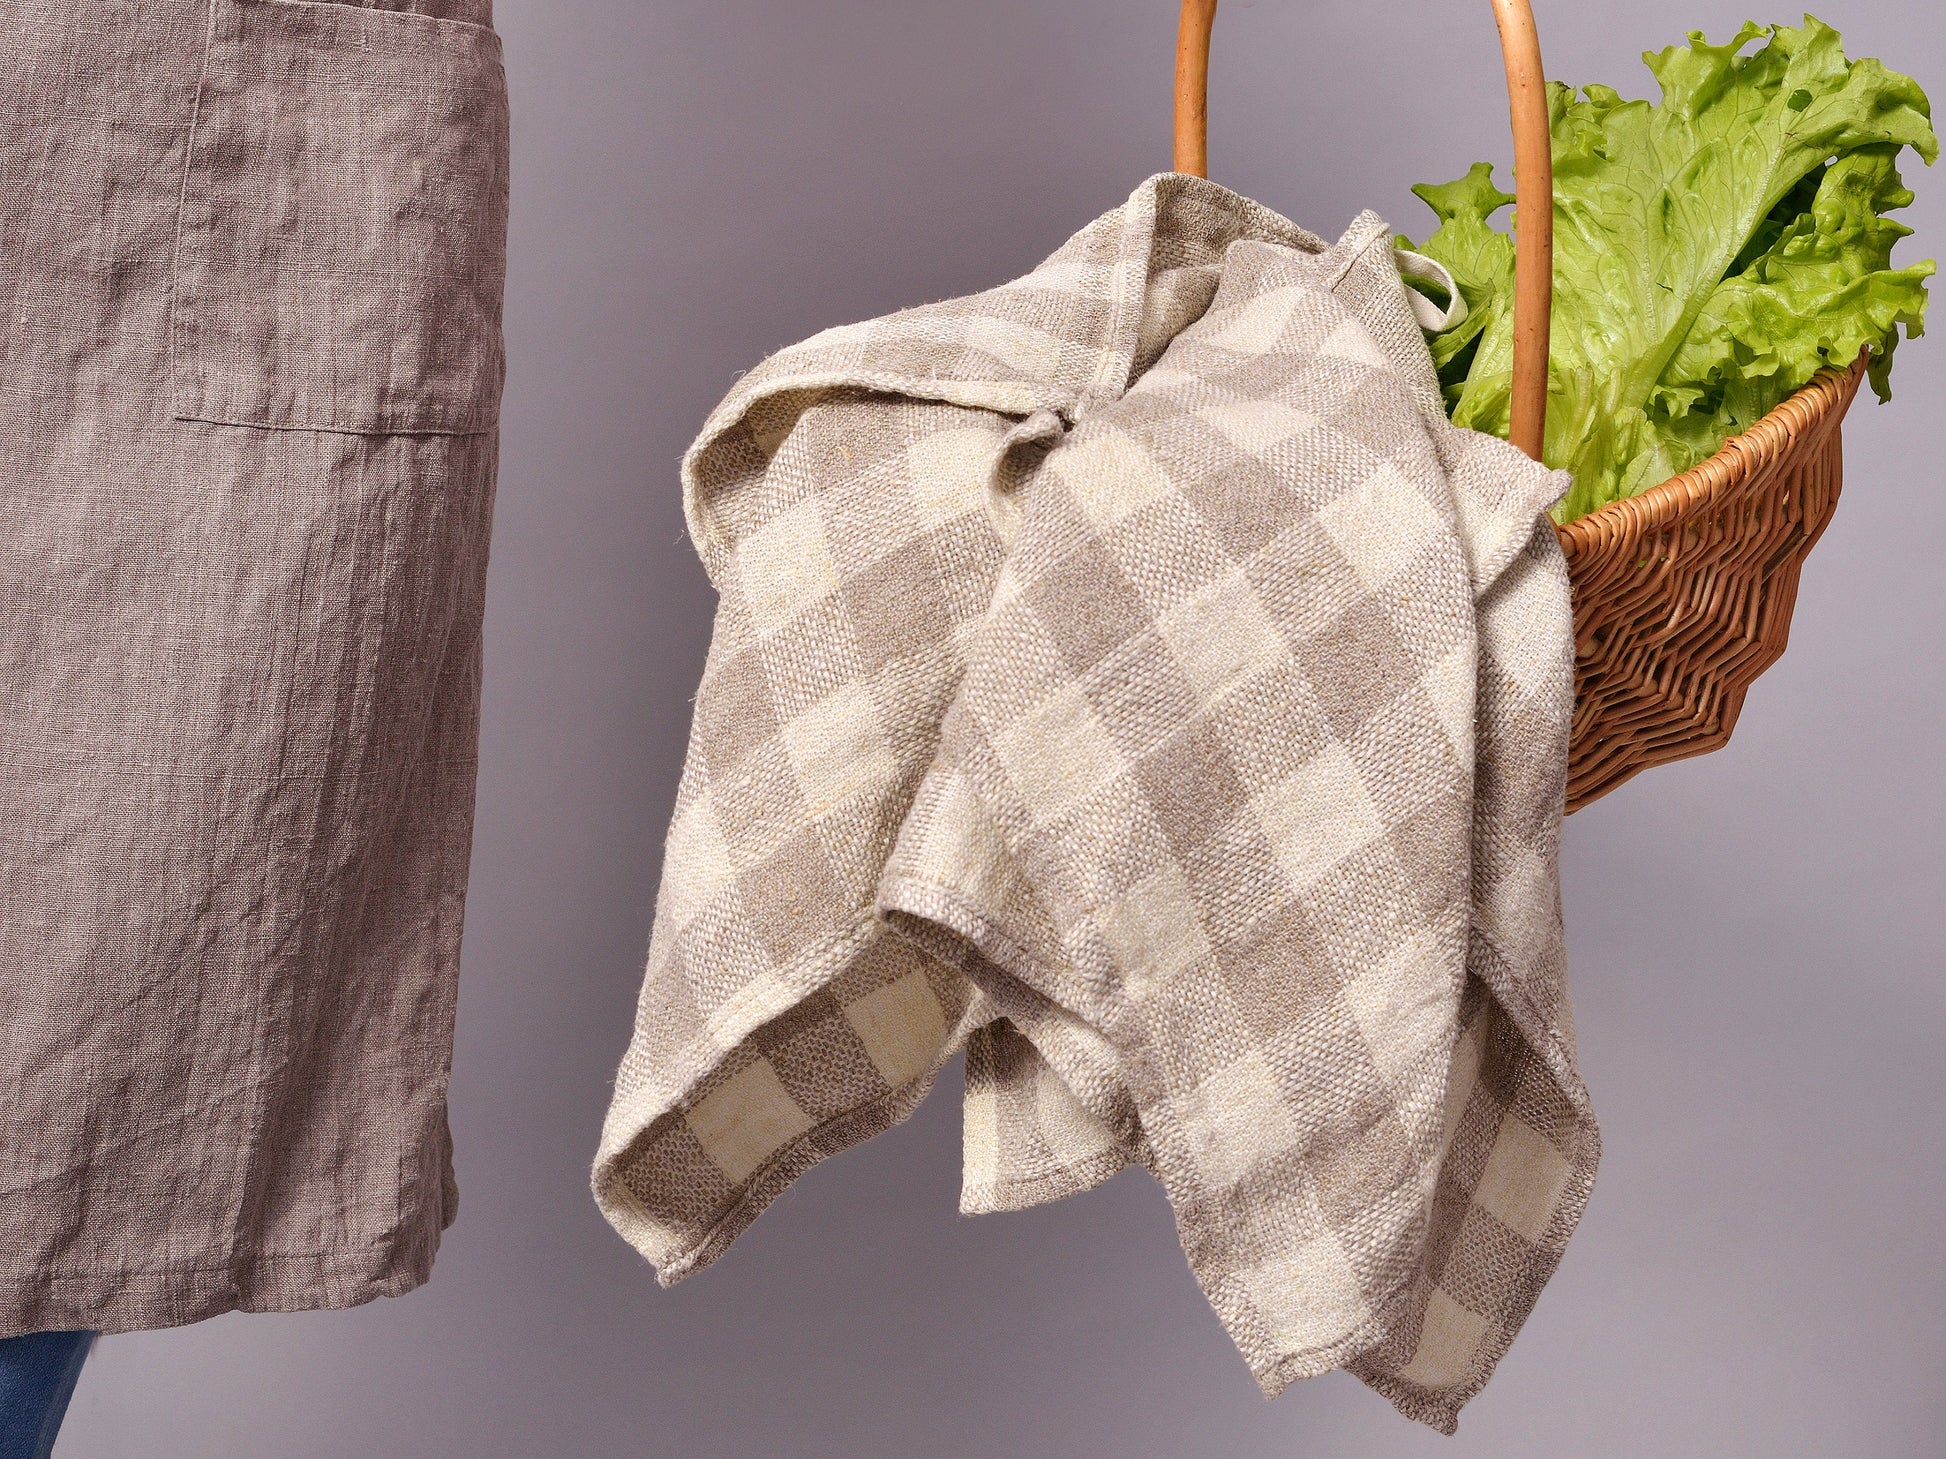 Linen Dish Towels - Kitchen Towels